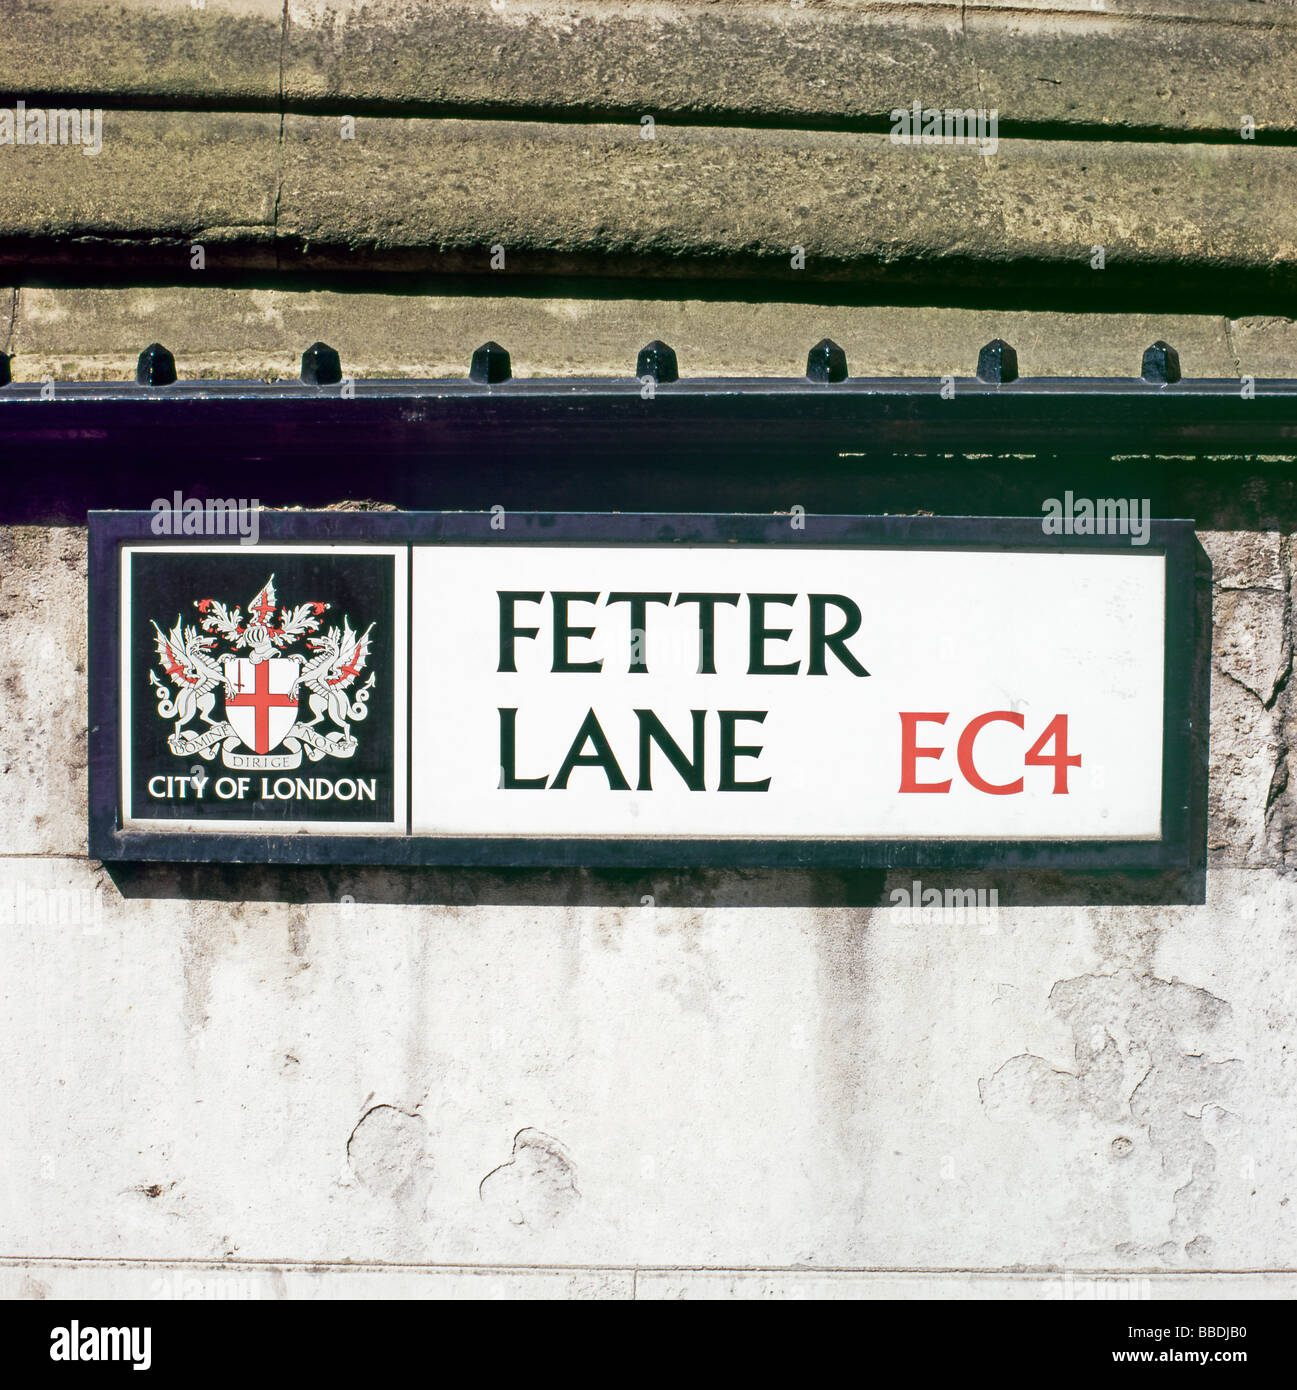 Fetter Lane EG4 Zeichen in der Stadt von London Straßenschilder London England UK KATHY DEWITT Stockfoto